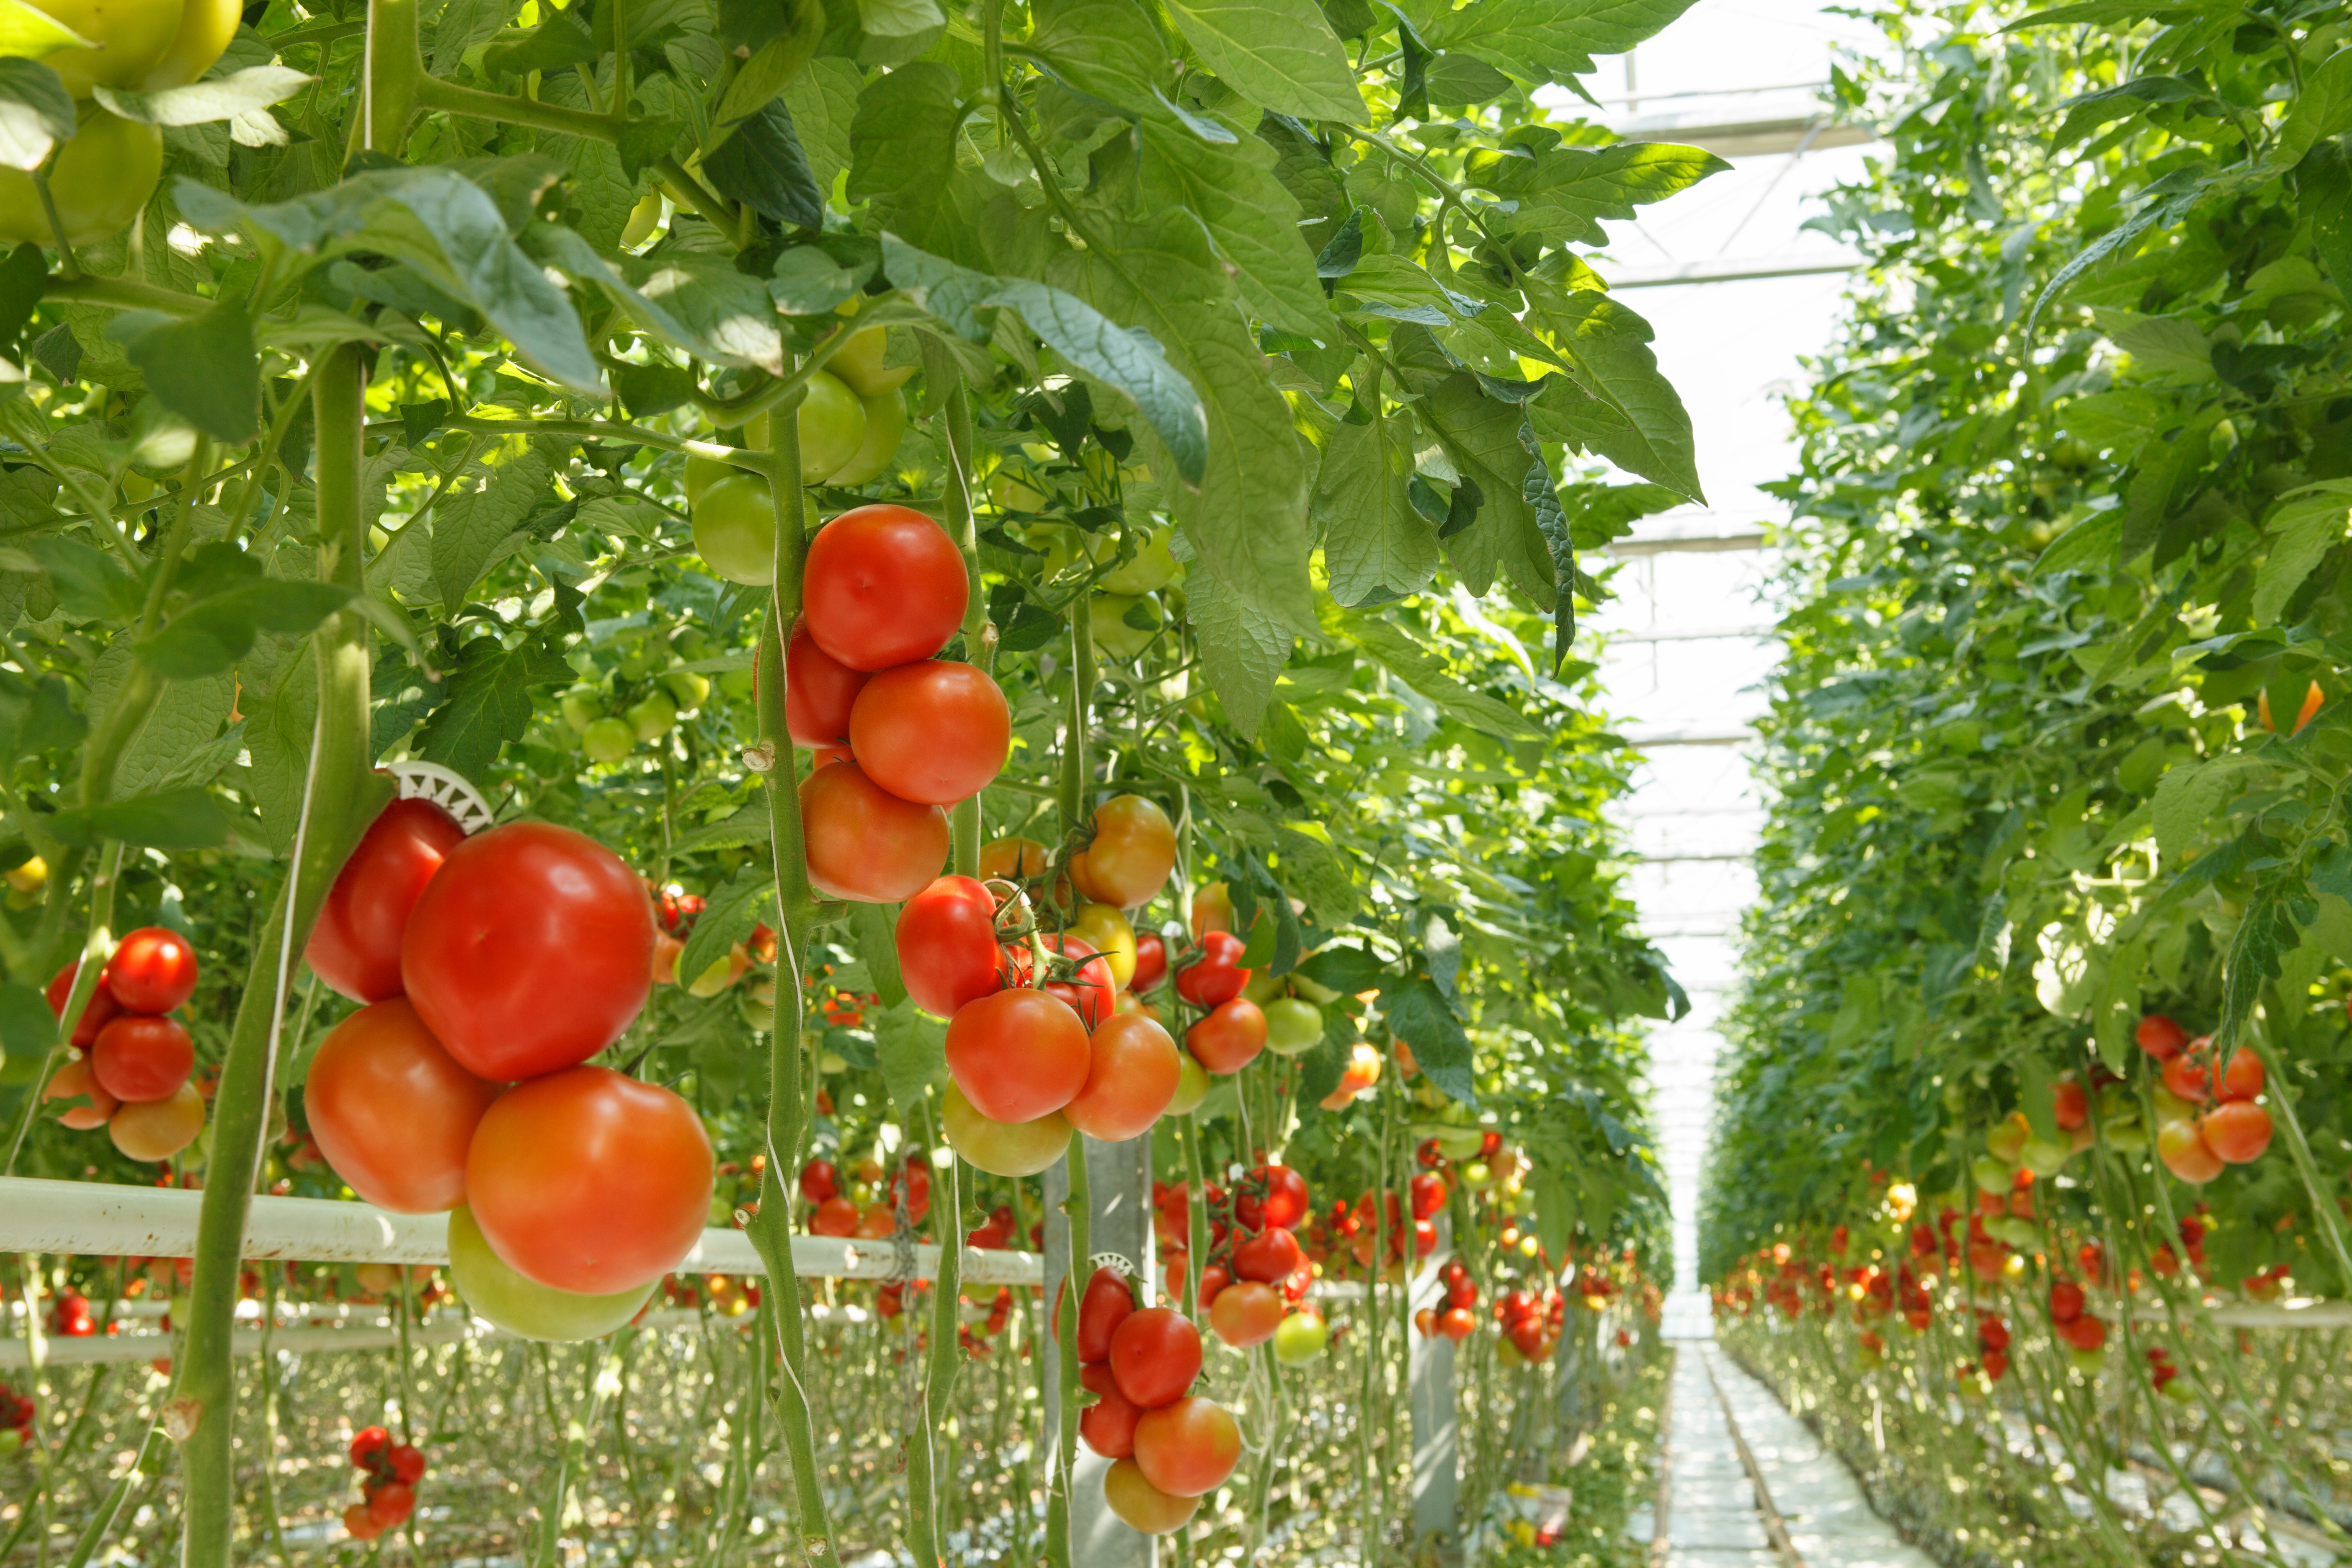 Apoyando a los agricultores con tecnología para alimentar al mundo de manera sostenible